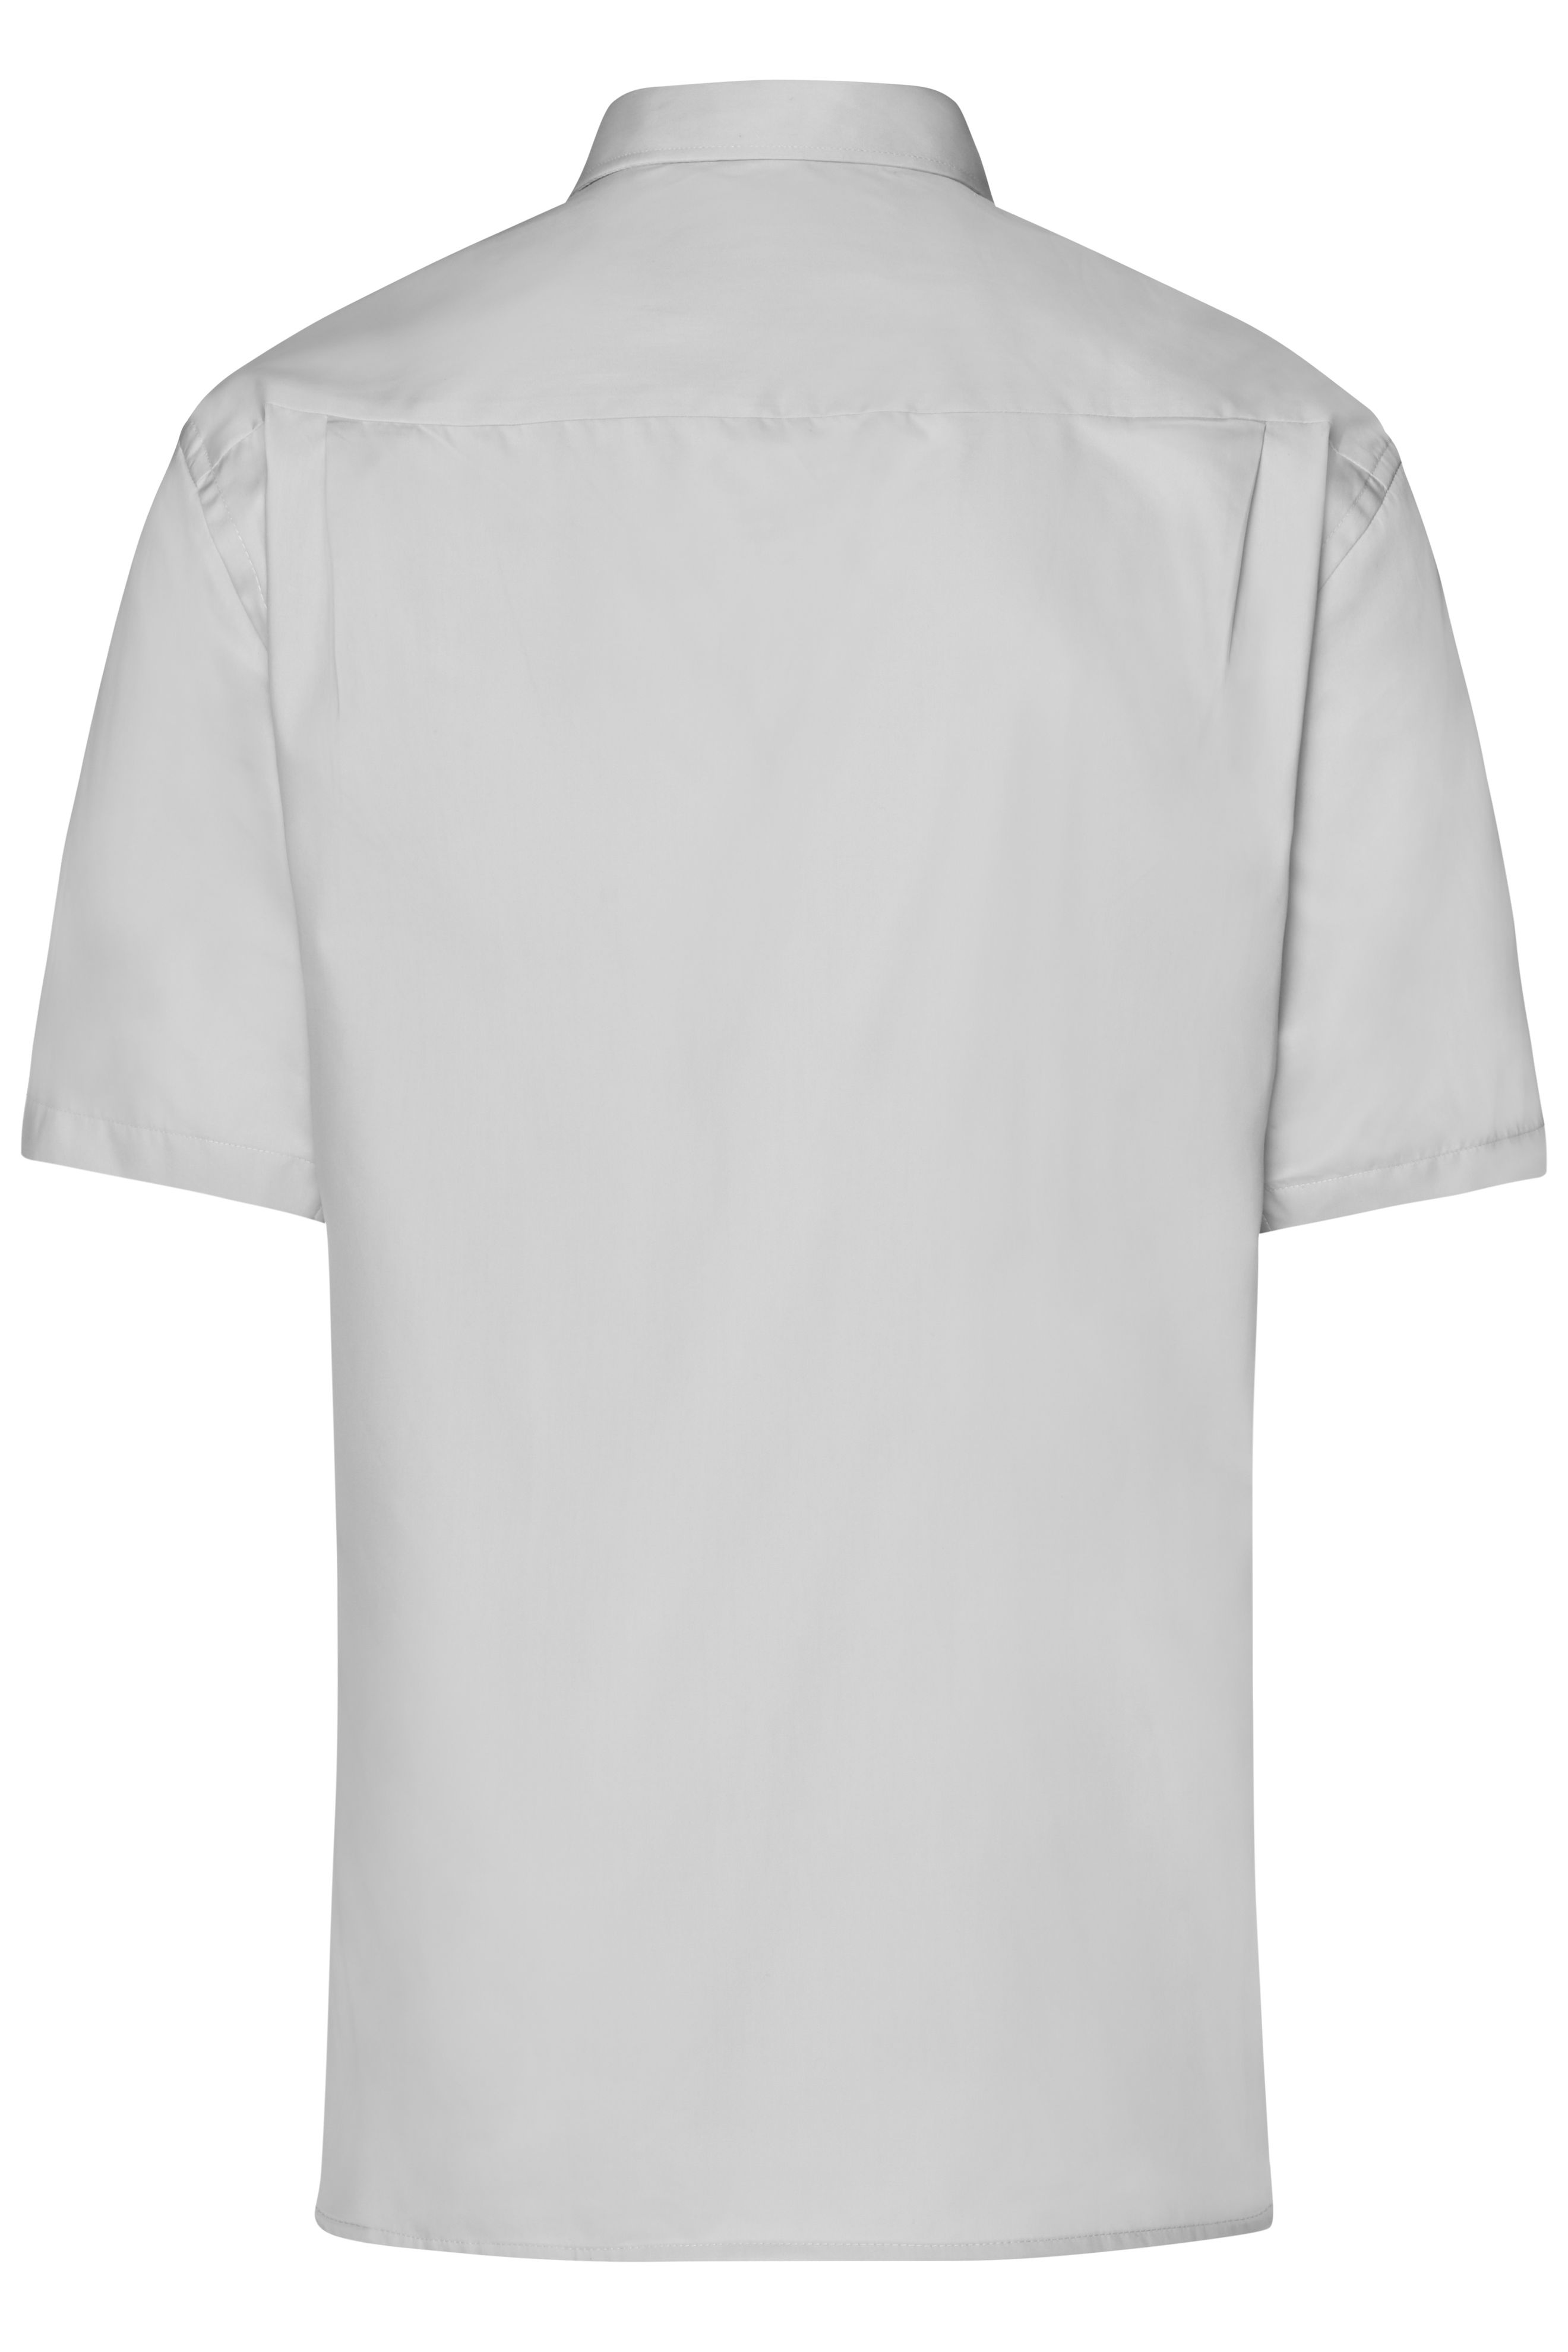 Men Men's Business Shirt Short-Sleeved Light-grey-Daiber